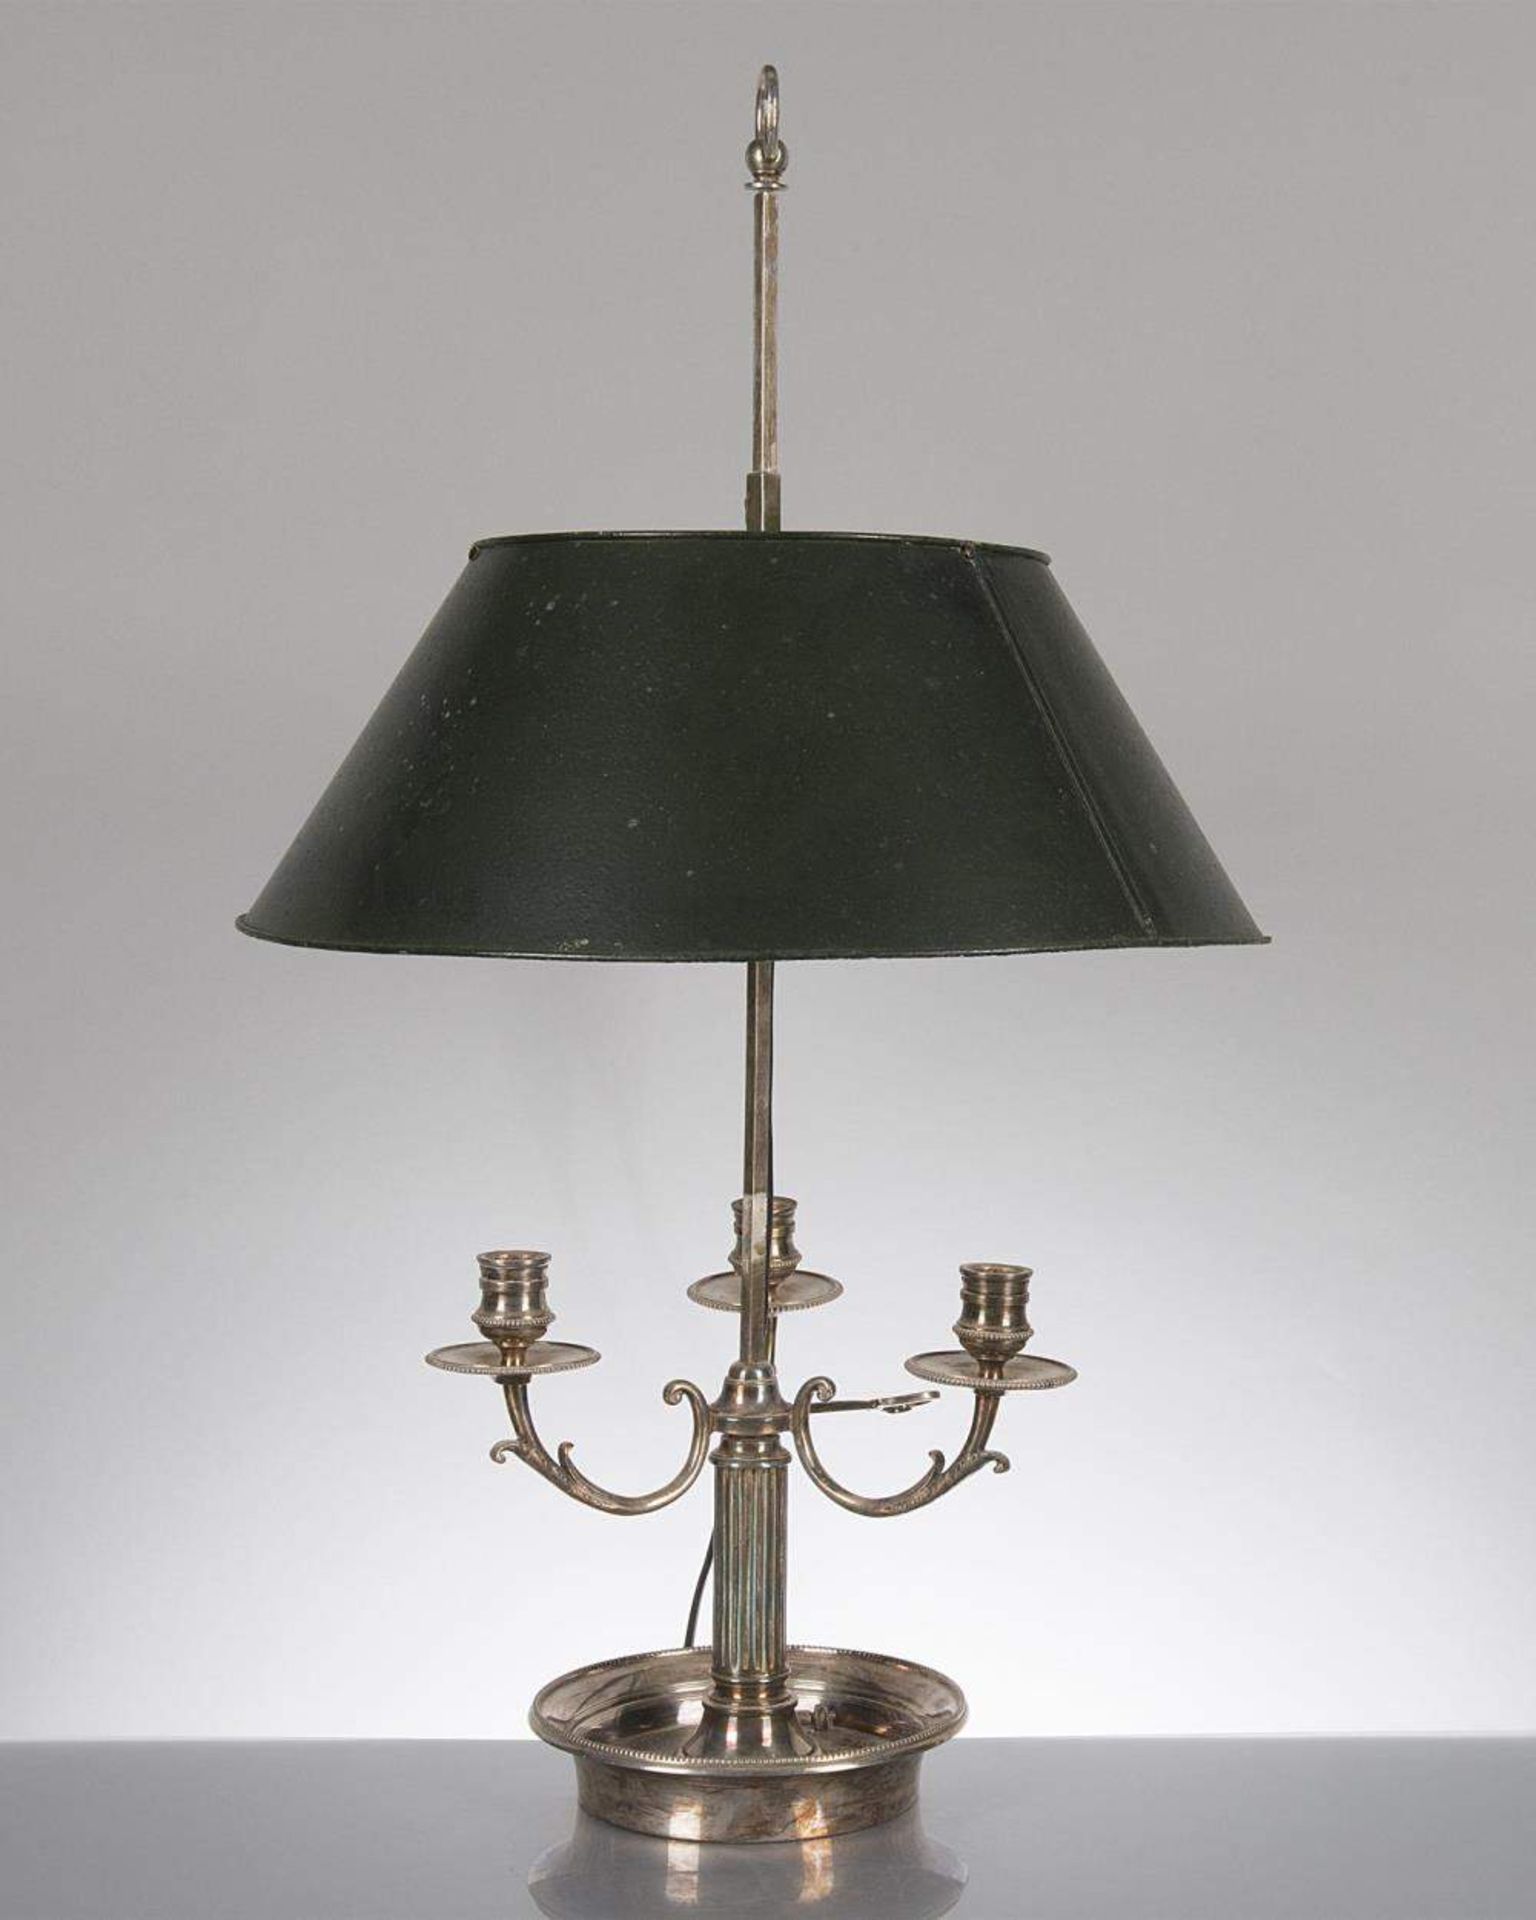 lampe bouillote à 3 feux et abat-jour en tôle peinte.

H. 68.5 cm 
 
Provenance: Château de